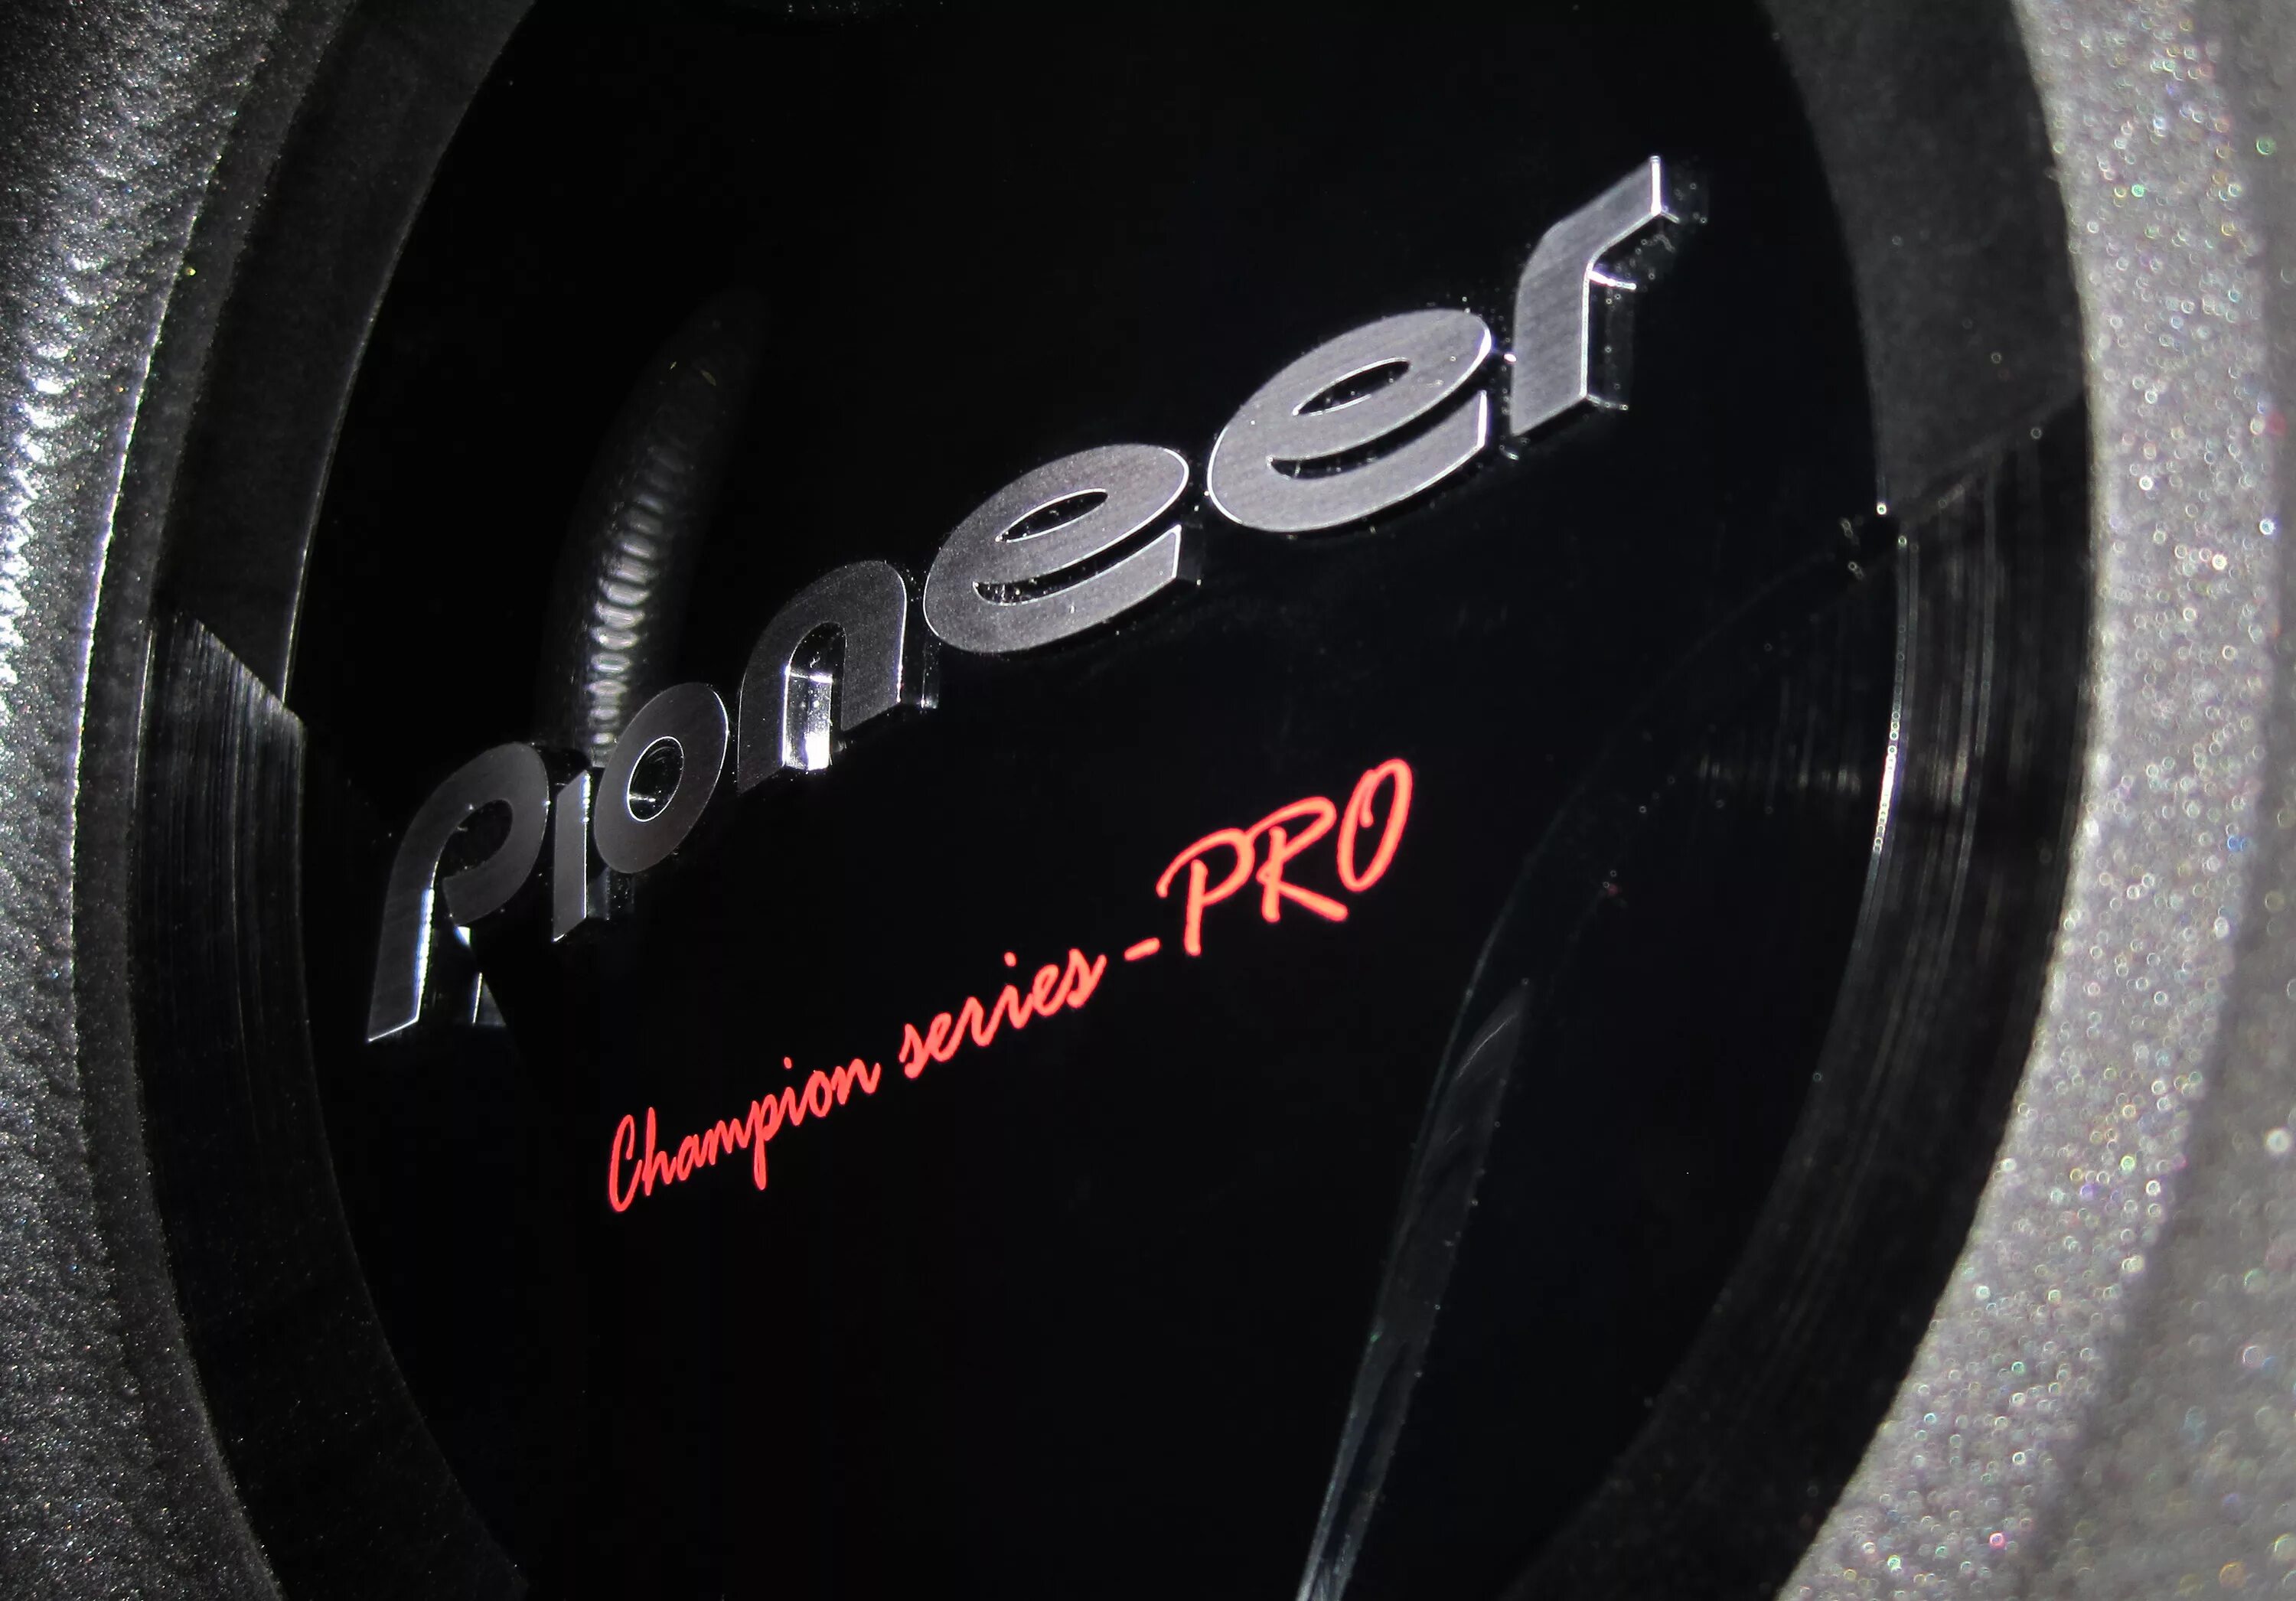 Музыка slow bass. Сабвуфер Pioneer Champion Series. Pioneer Pro сабвуфер. Pioneer обои. Сабвуфер Pioneer на лямке.